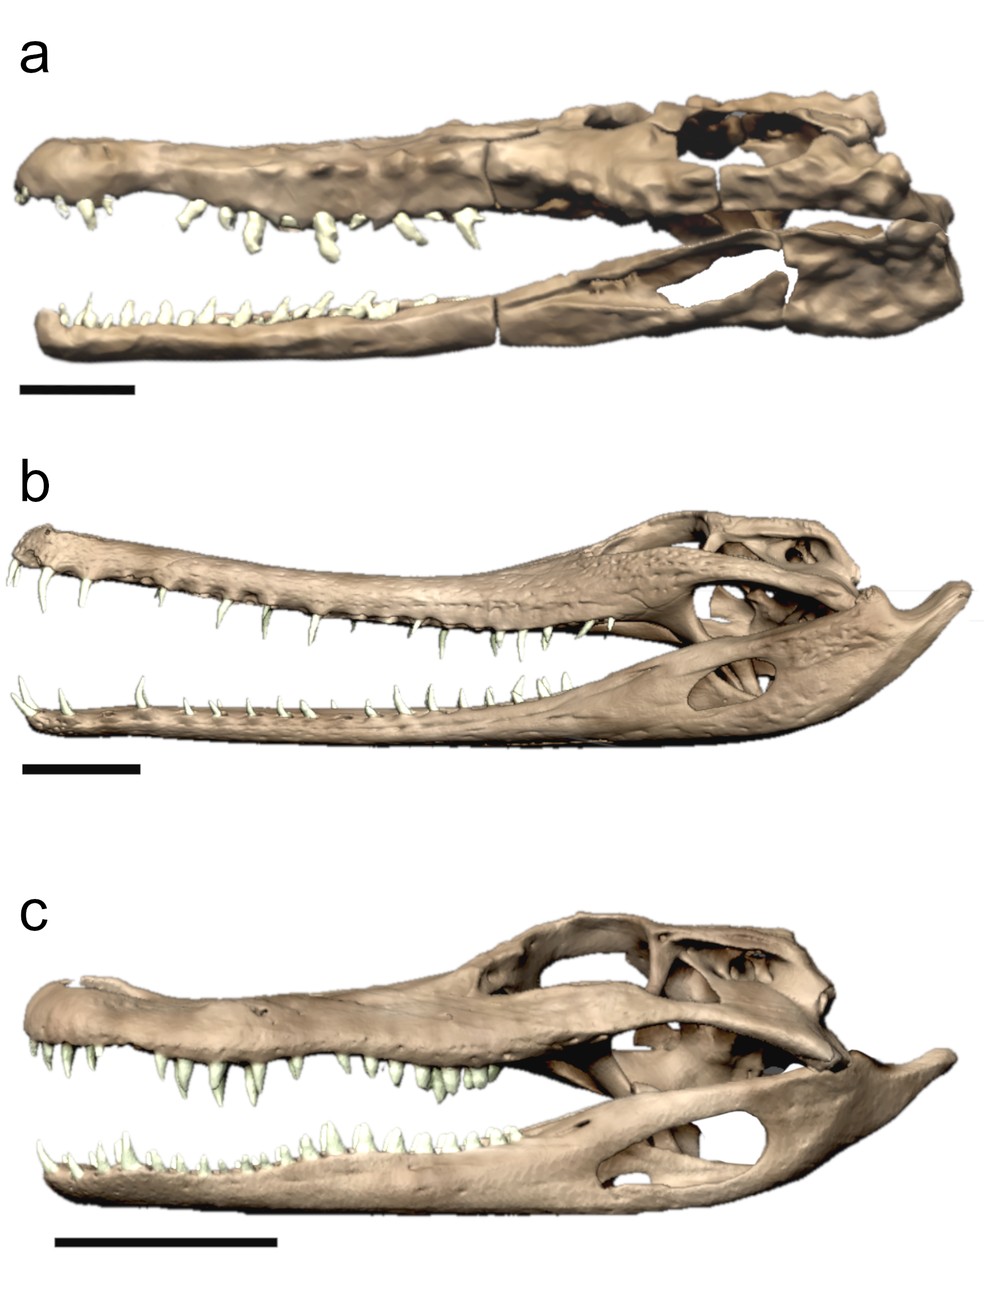 Modelos demonstram convergência evolutiva. De cima para baixo, observa-se, respectivamente, os crânios do proterocâmpsio (a); gavial-da-malásia (b); e aligátor (c) — Foto: Divulgação